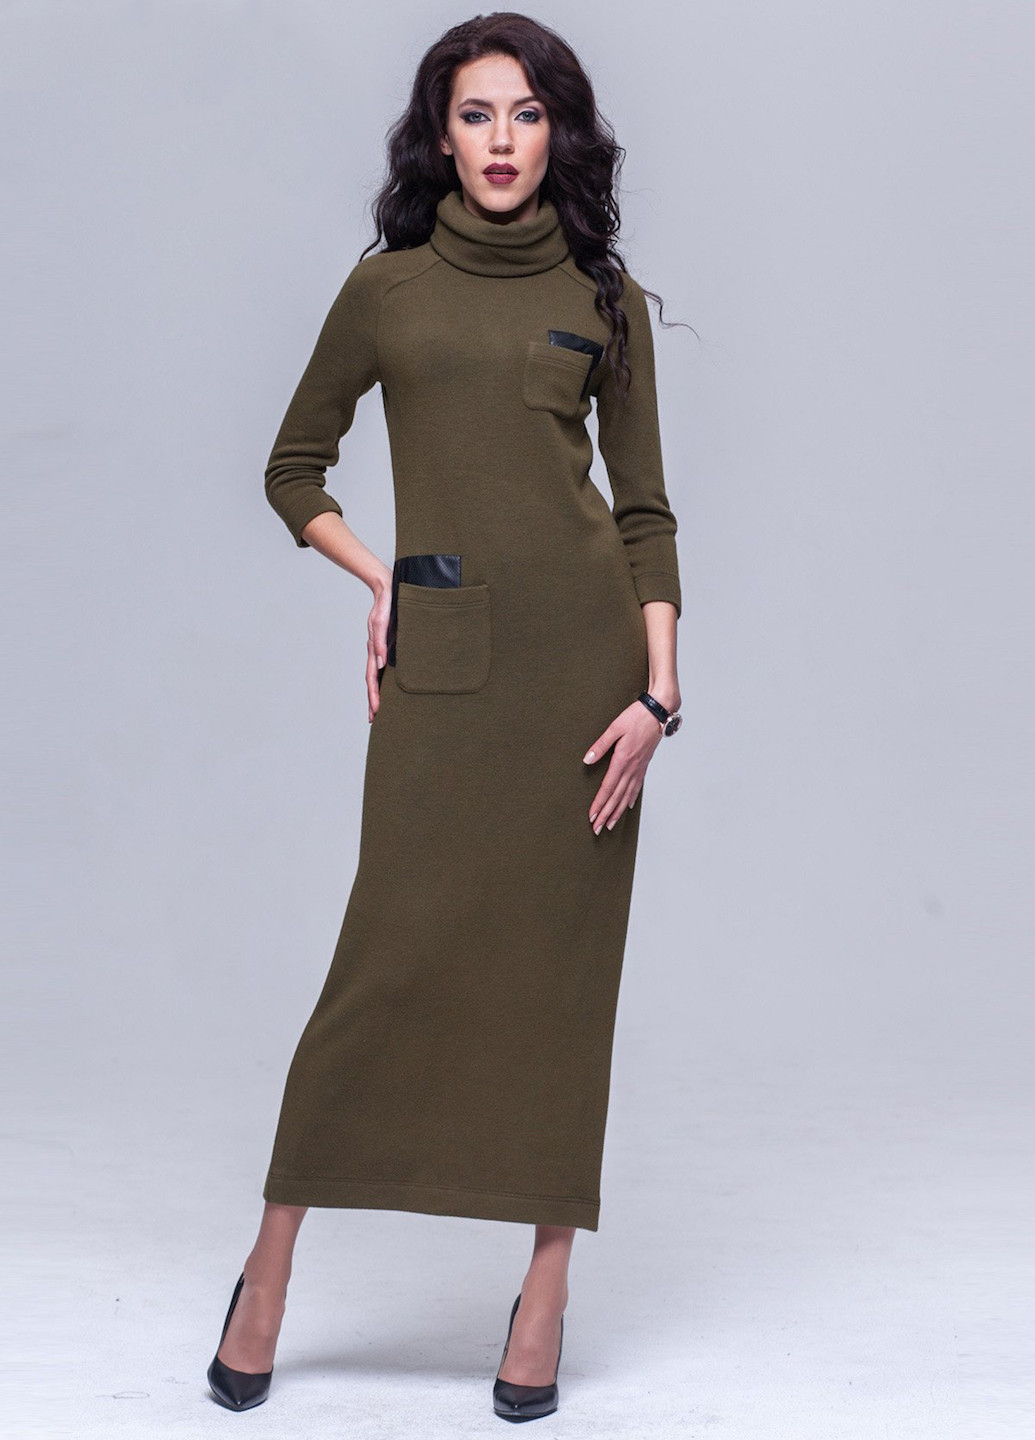 Оливковое (хаки) кэжуал платье дреда ангора хаки+съемный хомут Jet